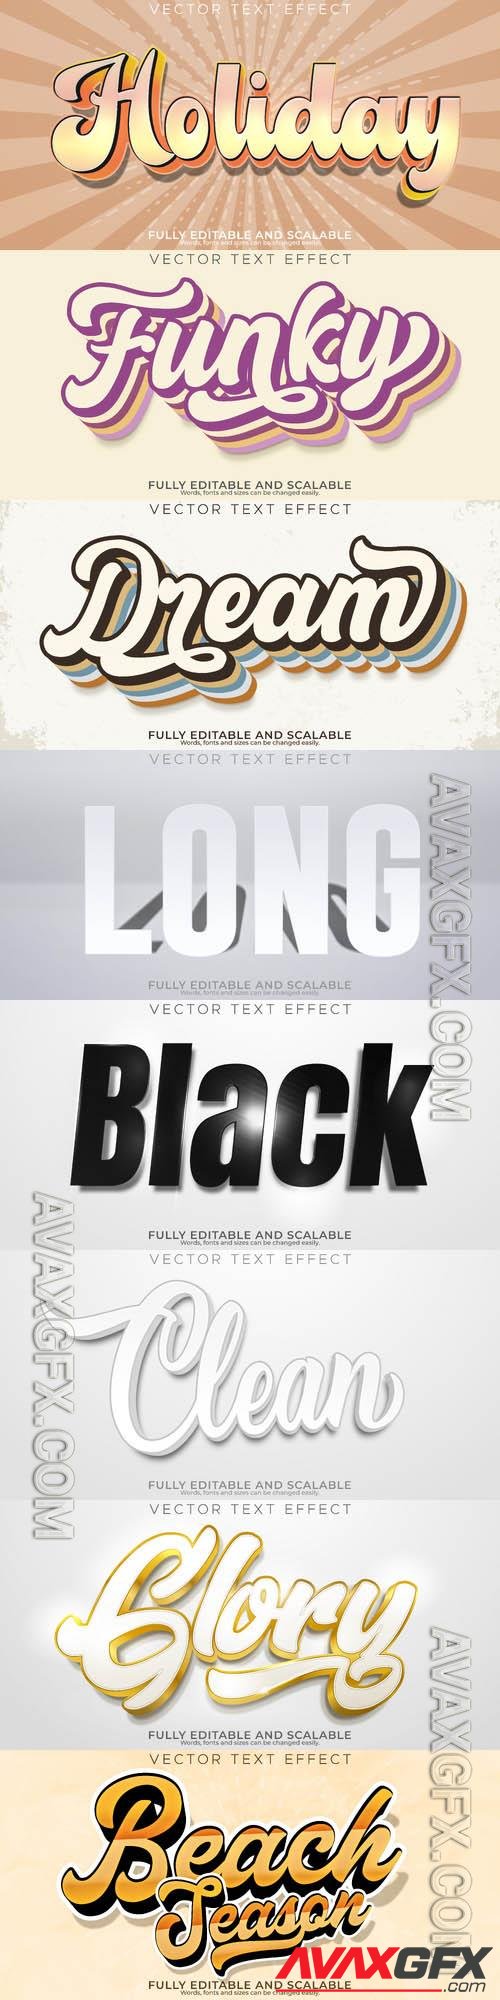 Vector 3d text editable, text effect font vol 164